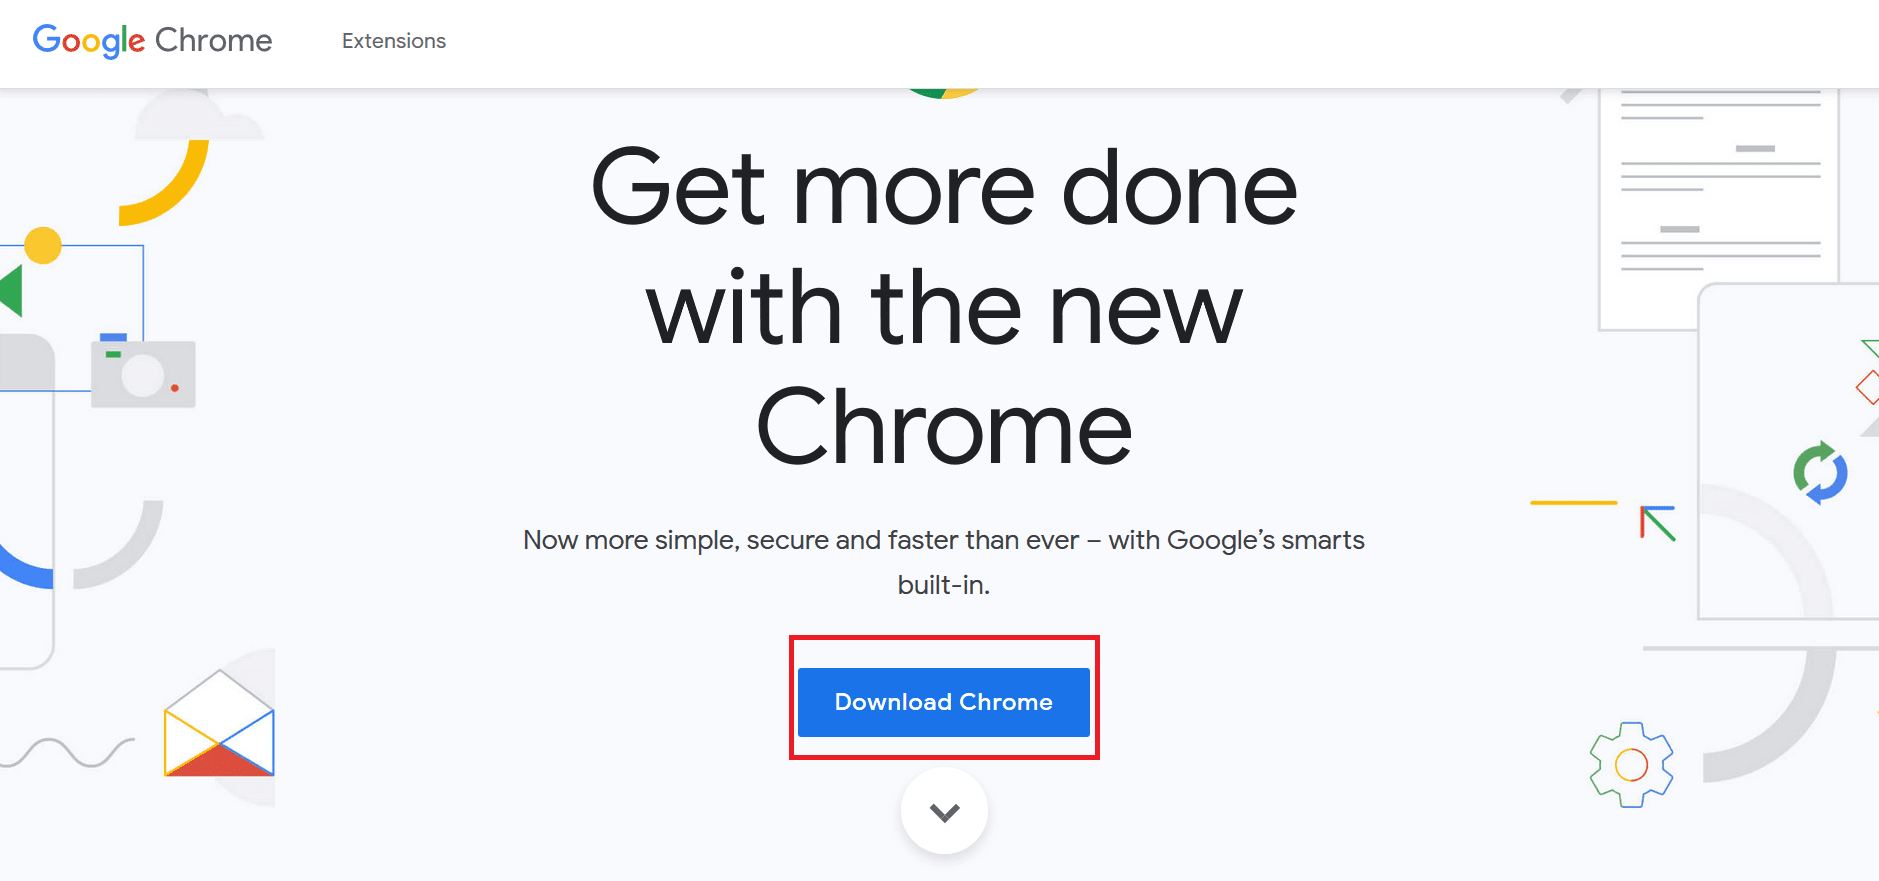 kliknij przycisk Pobierz Chrome, aby pobrać najnowszą wersję Instalatora Chrome.